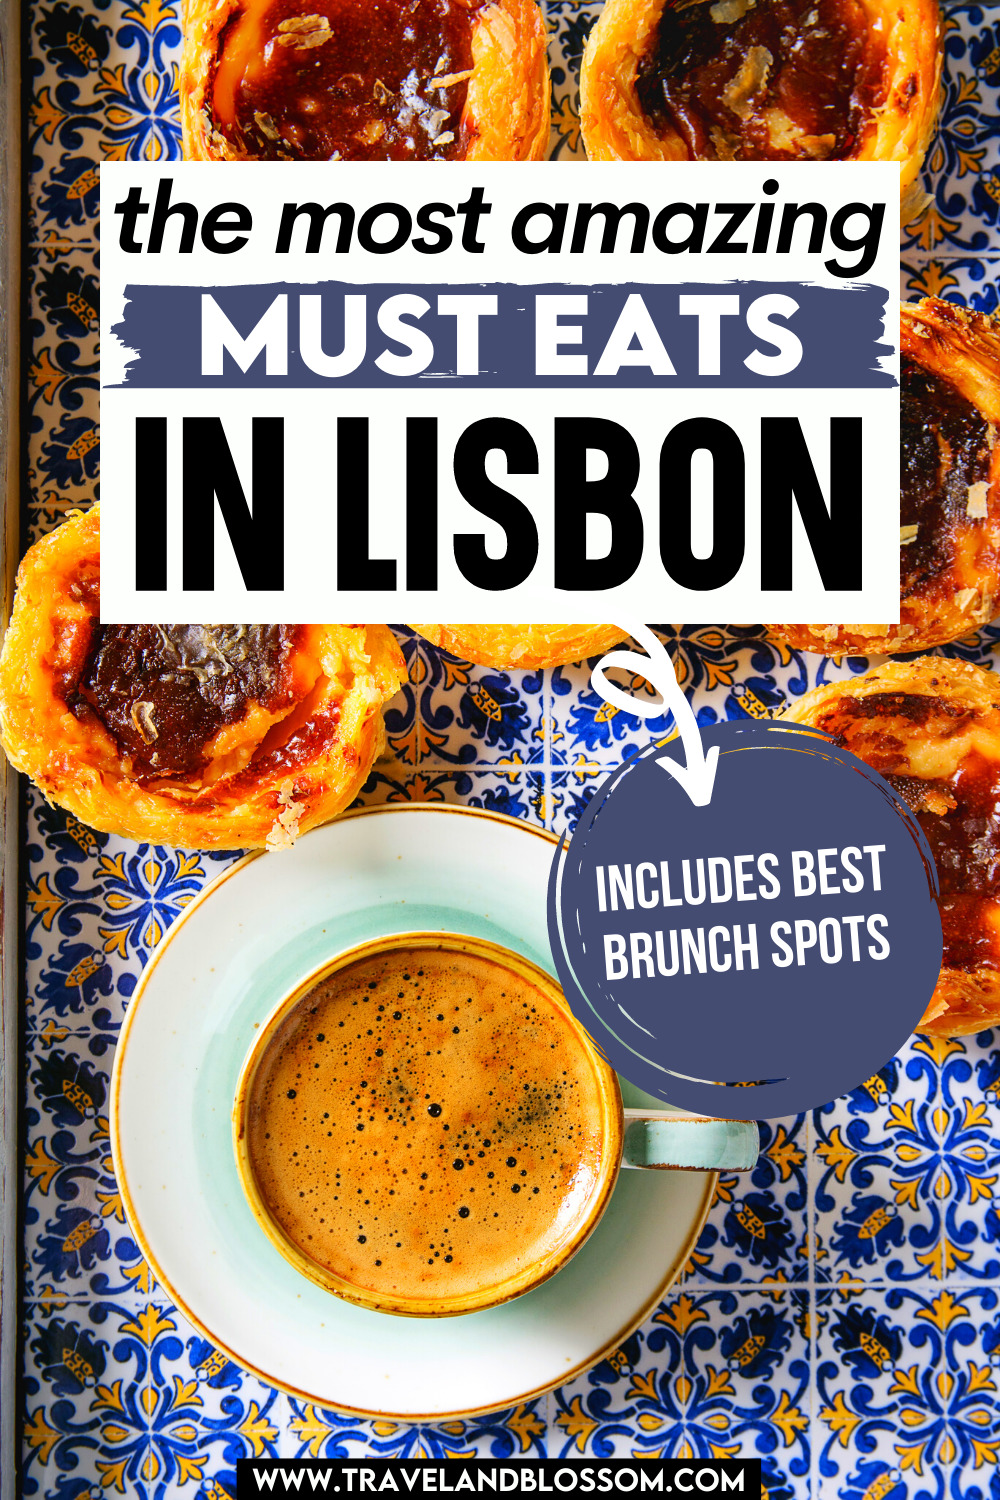 10 Amazing Must Eats in Lisbon